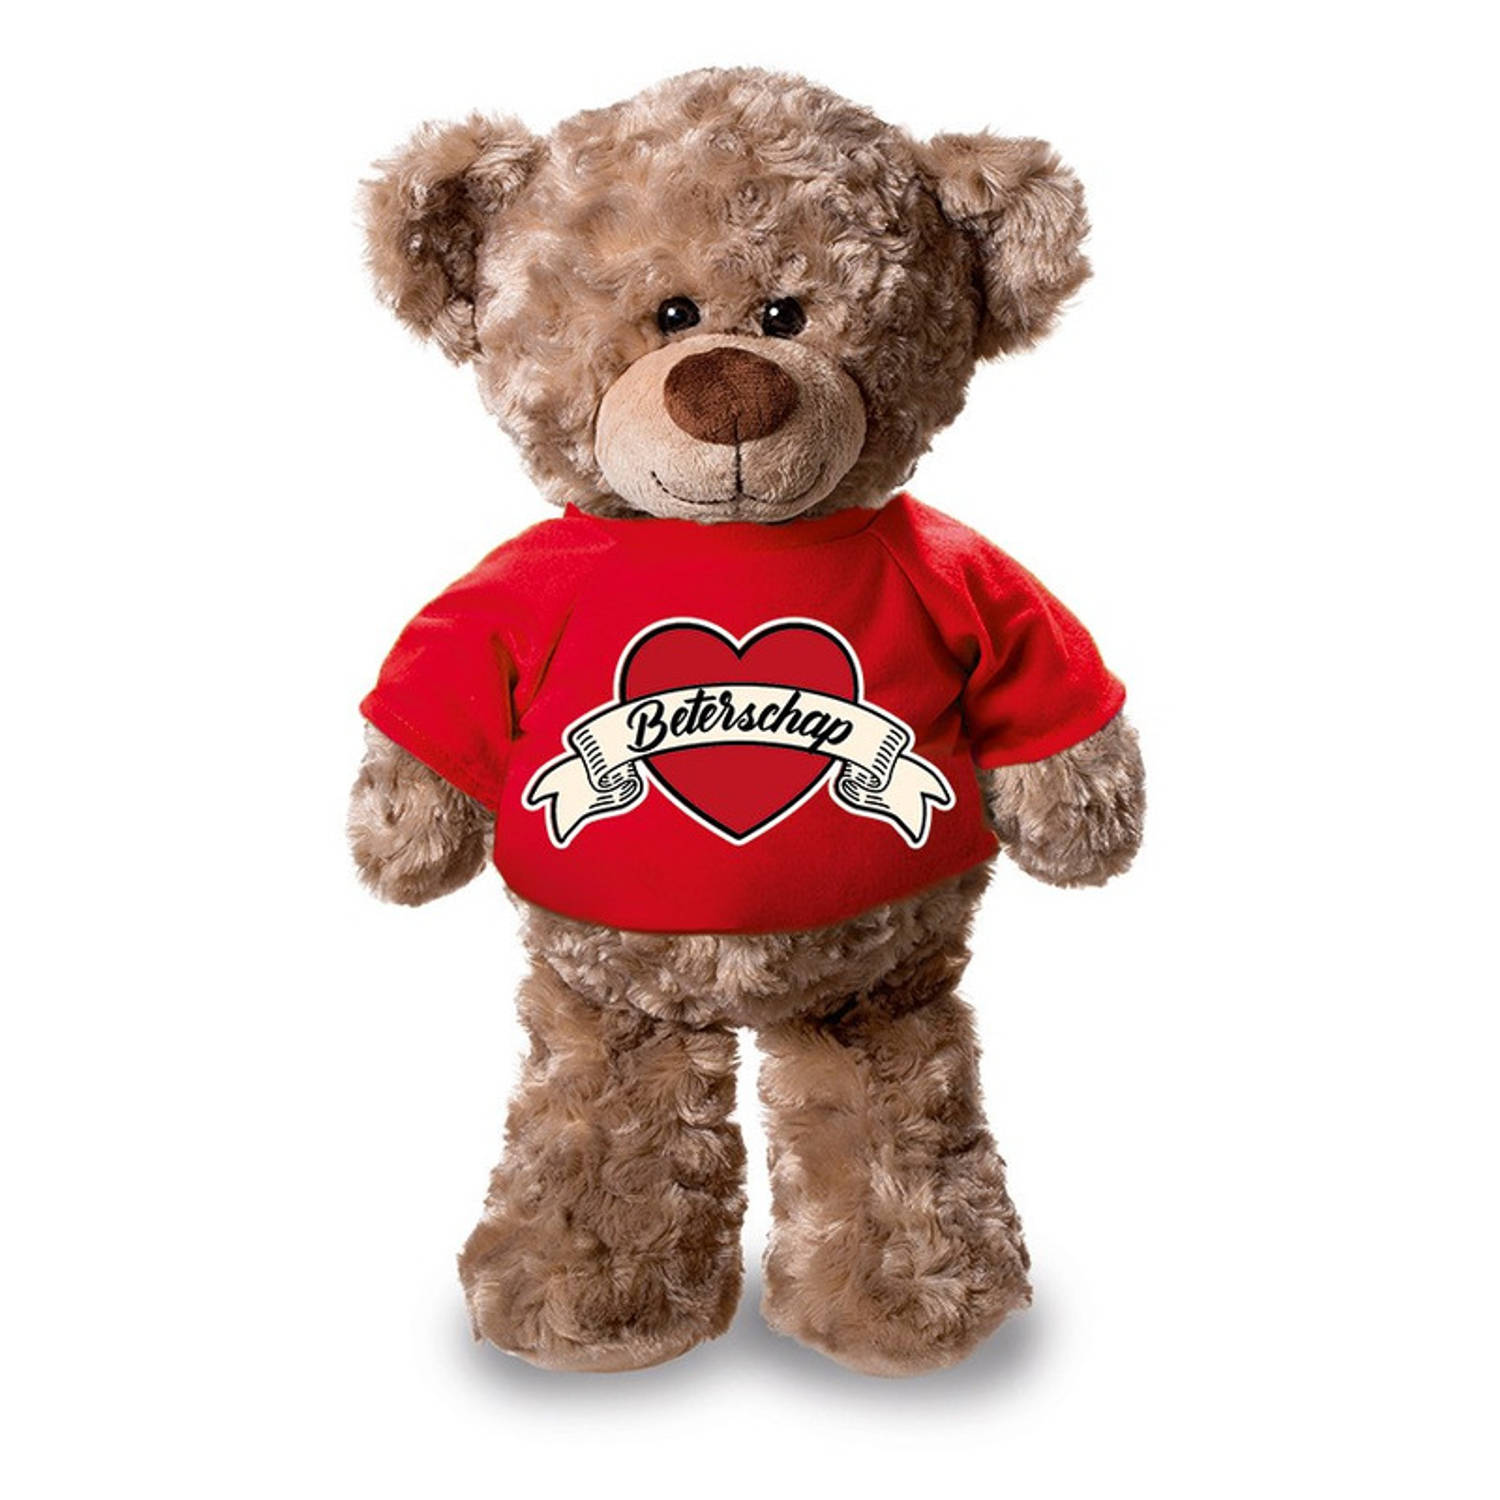 Beterschap pluche teddybeer knuffel 24 cm met rood t-shirt beterschap-cadeau knuffelbeer